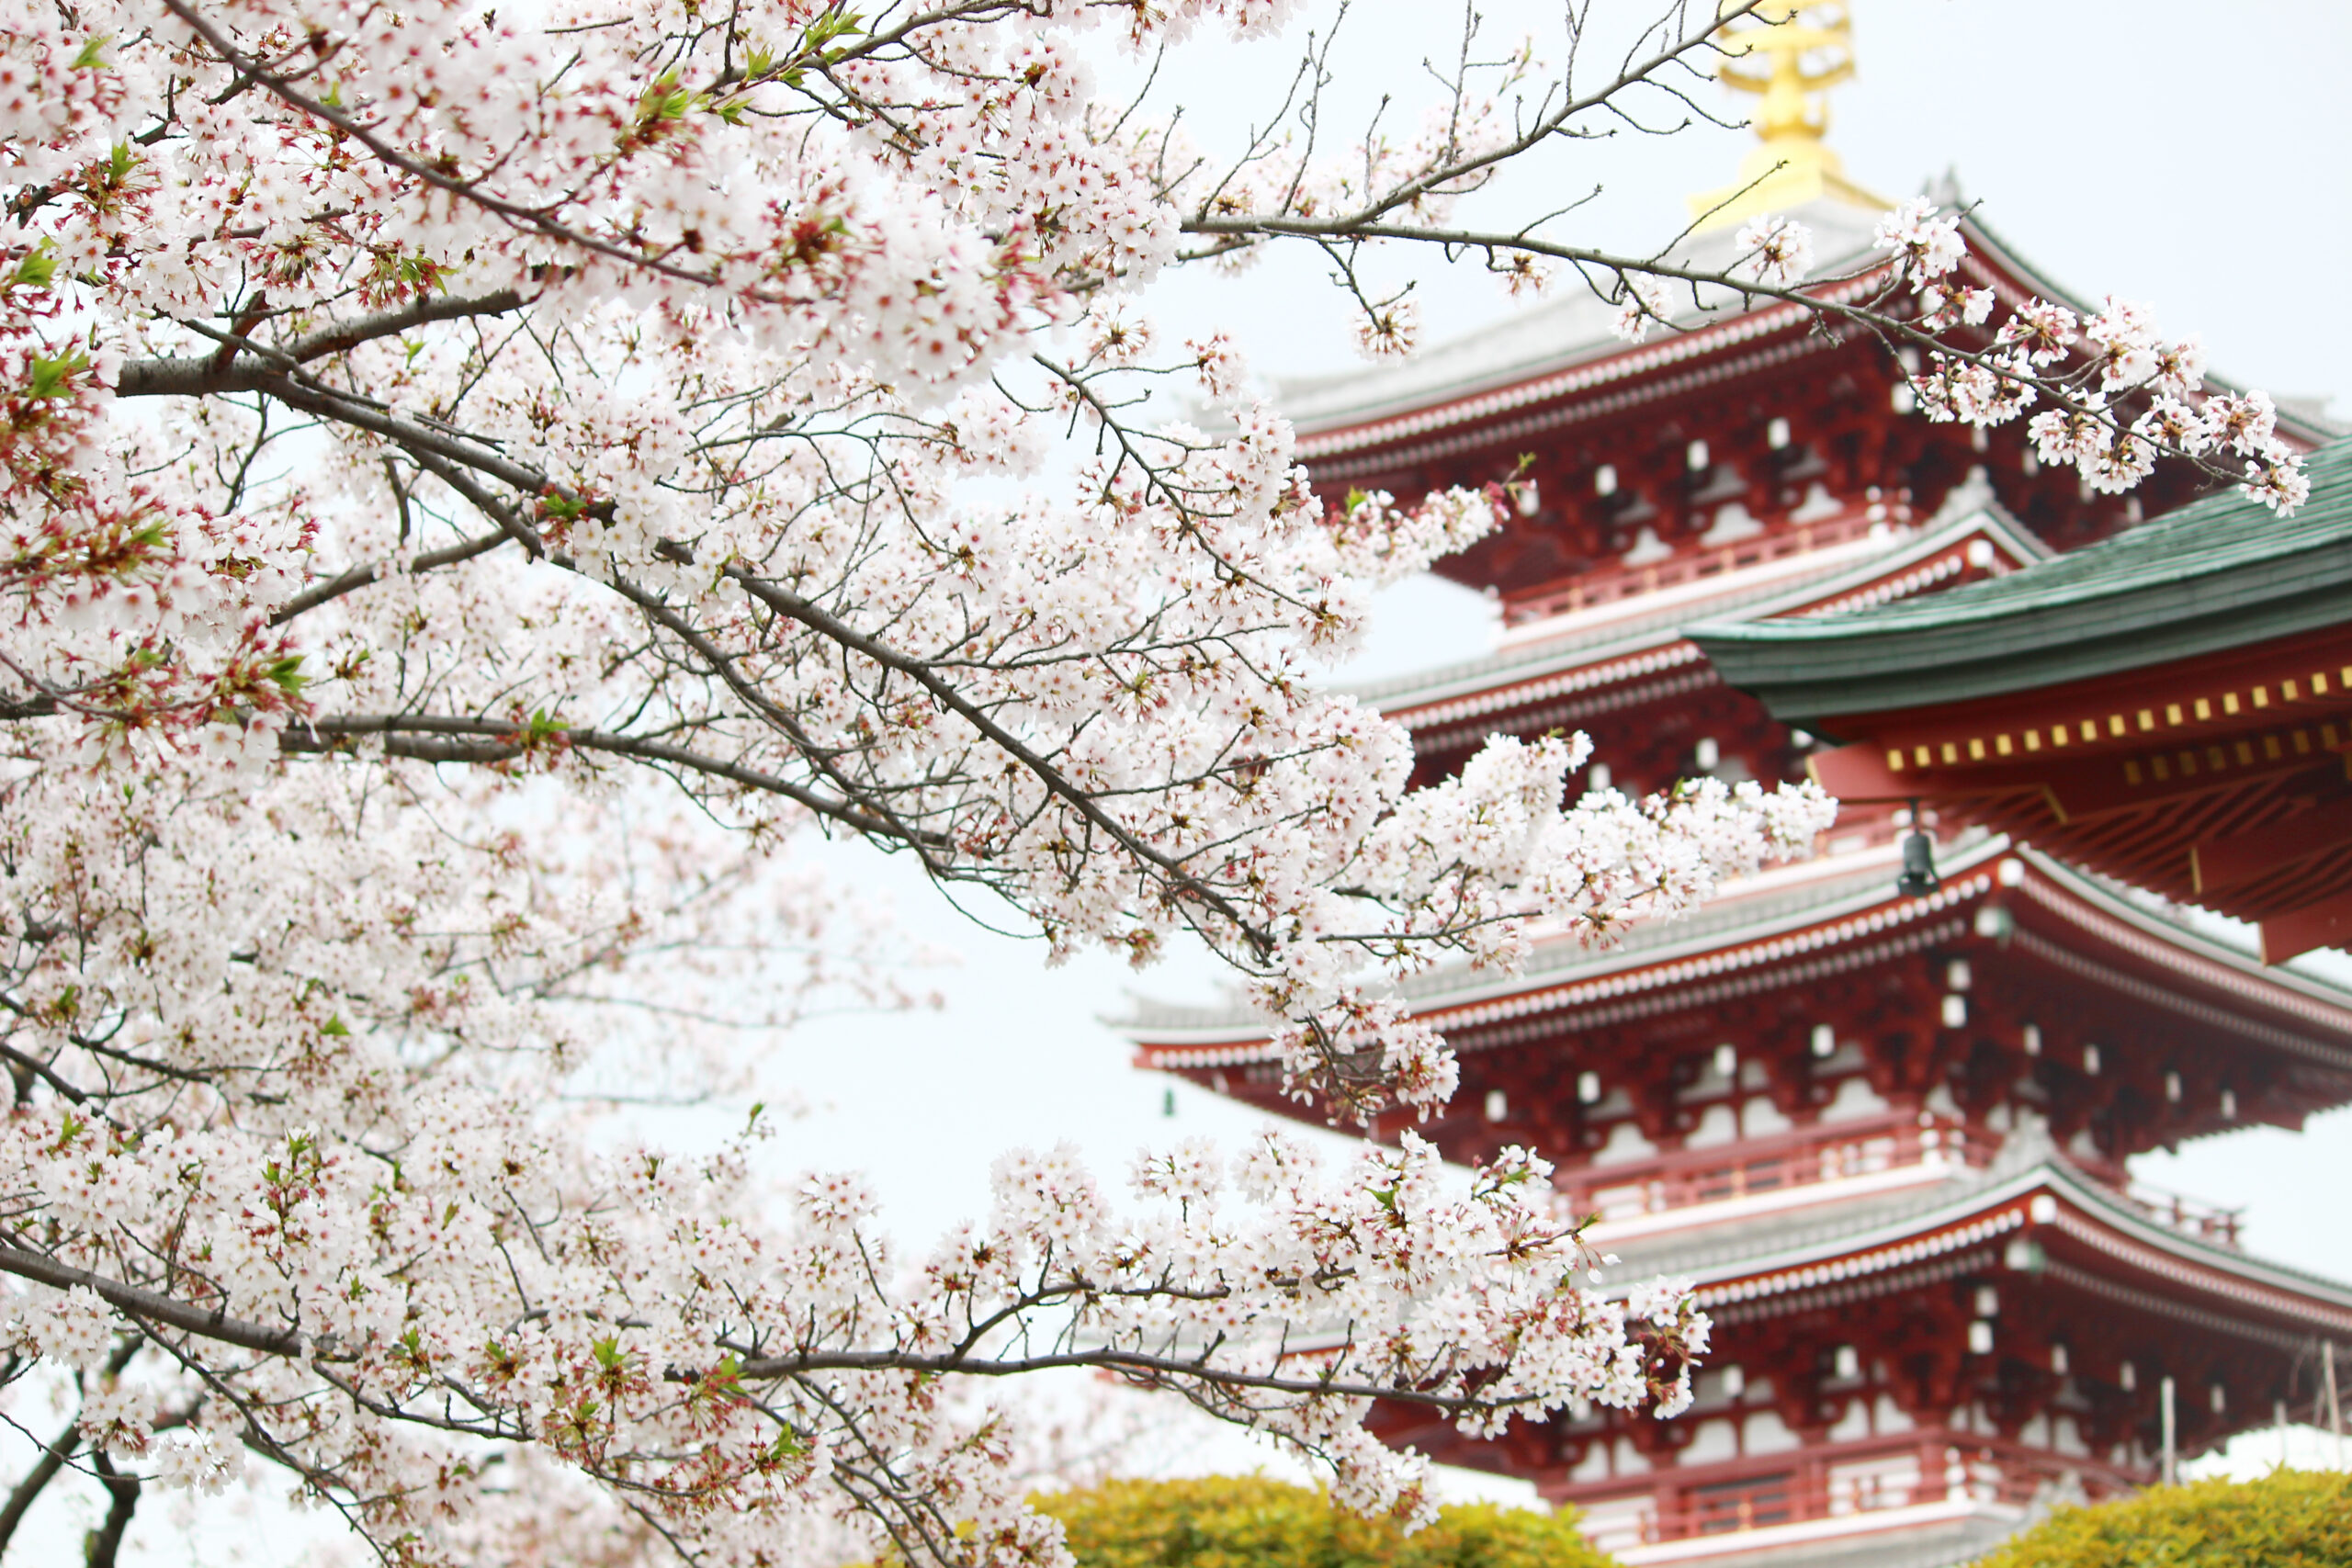 浅草寺の桜 仲見世 境内に咲き誇る桜が美しい スカイツリーと桜の競演も オマツリジャパン あなたと祭りをつなげるメディア